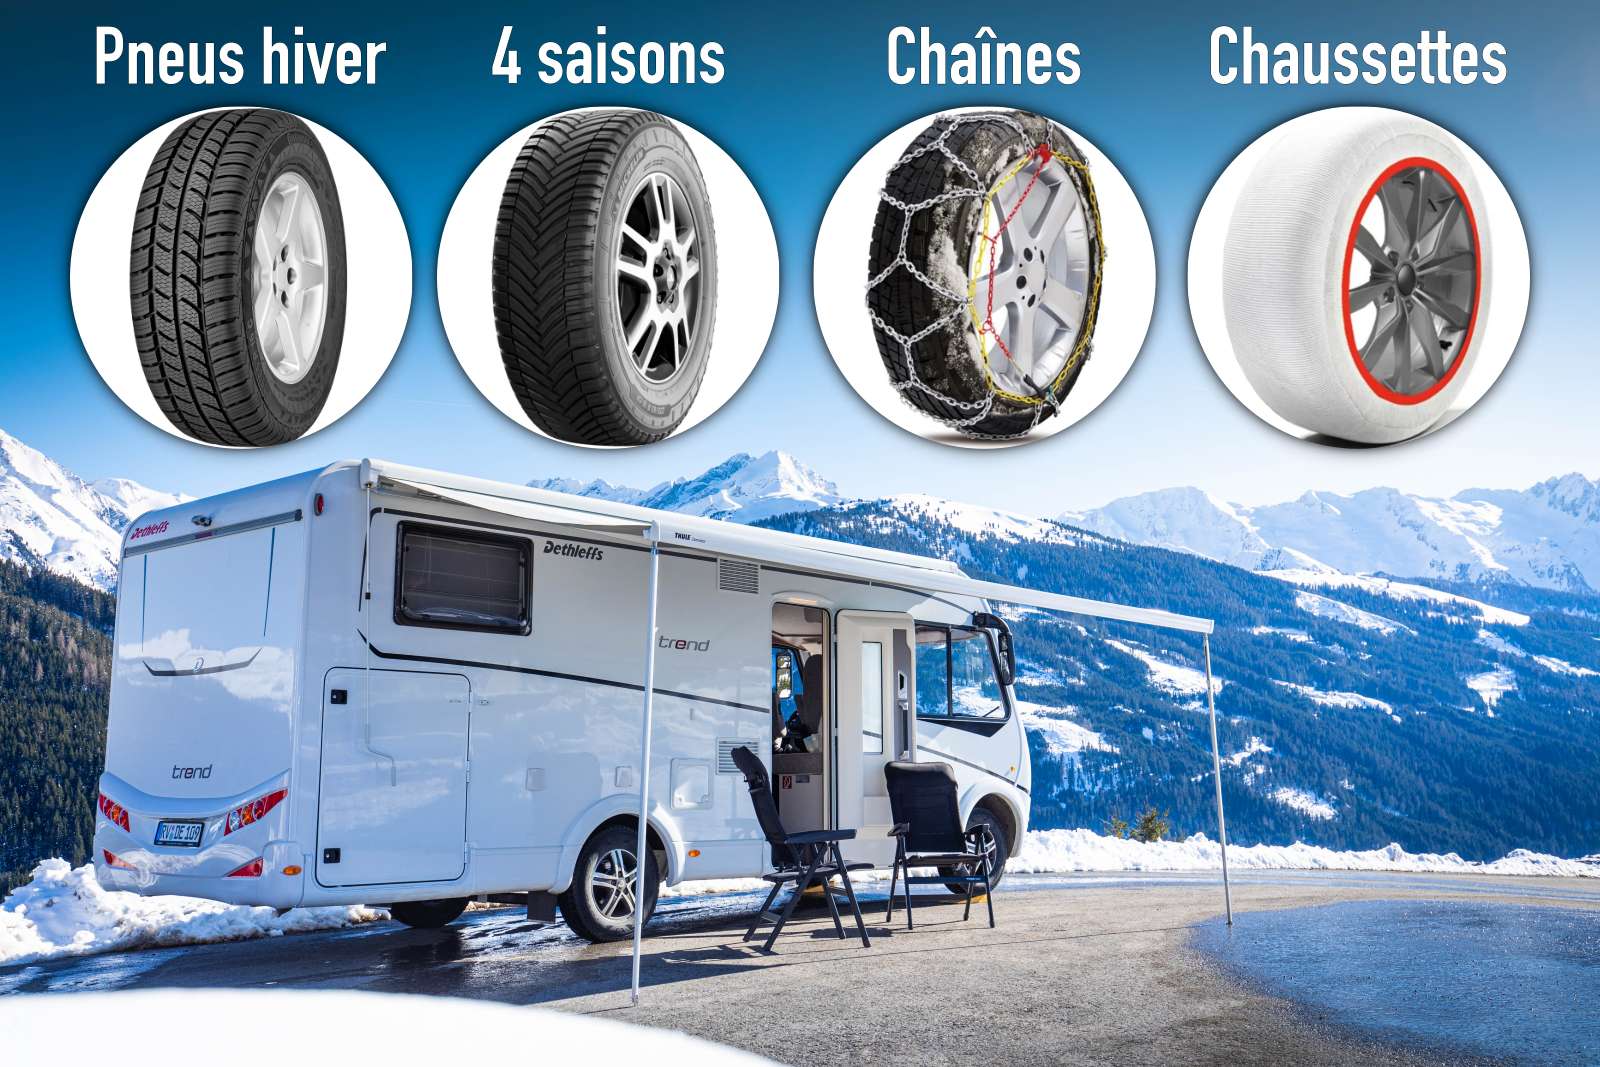 Accessoires pour camping-car : équipez votre véhicule